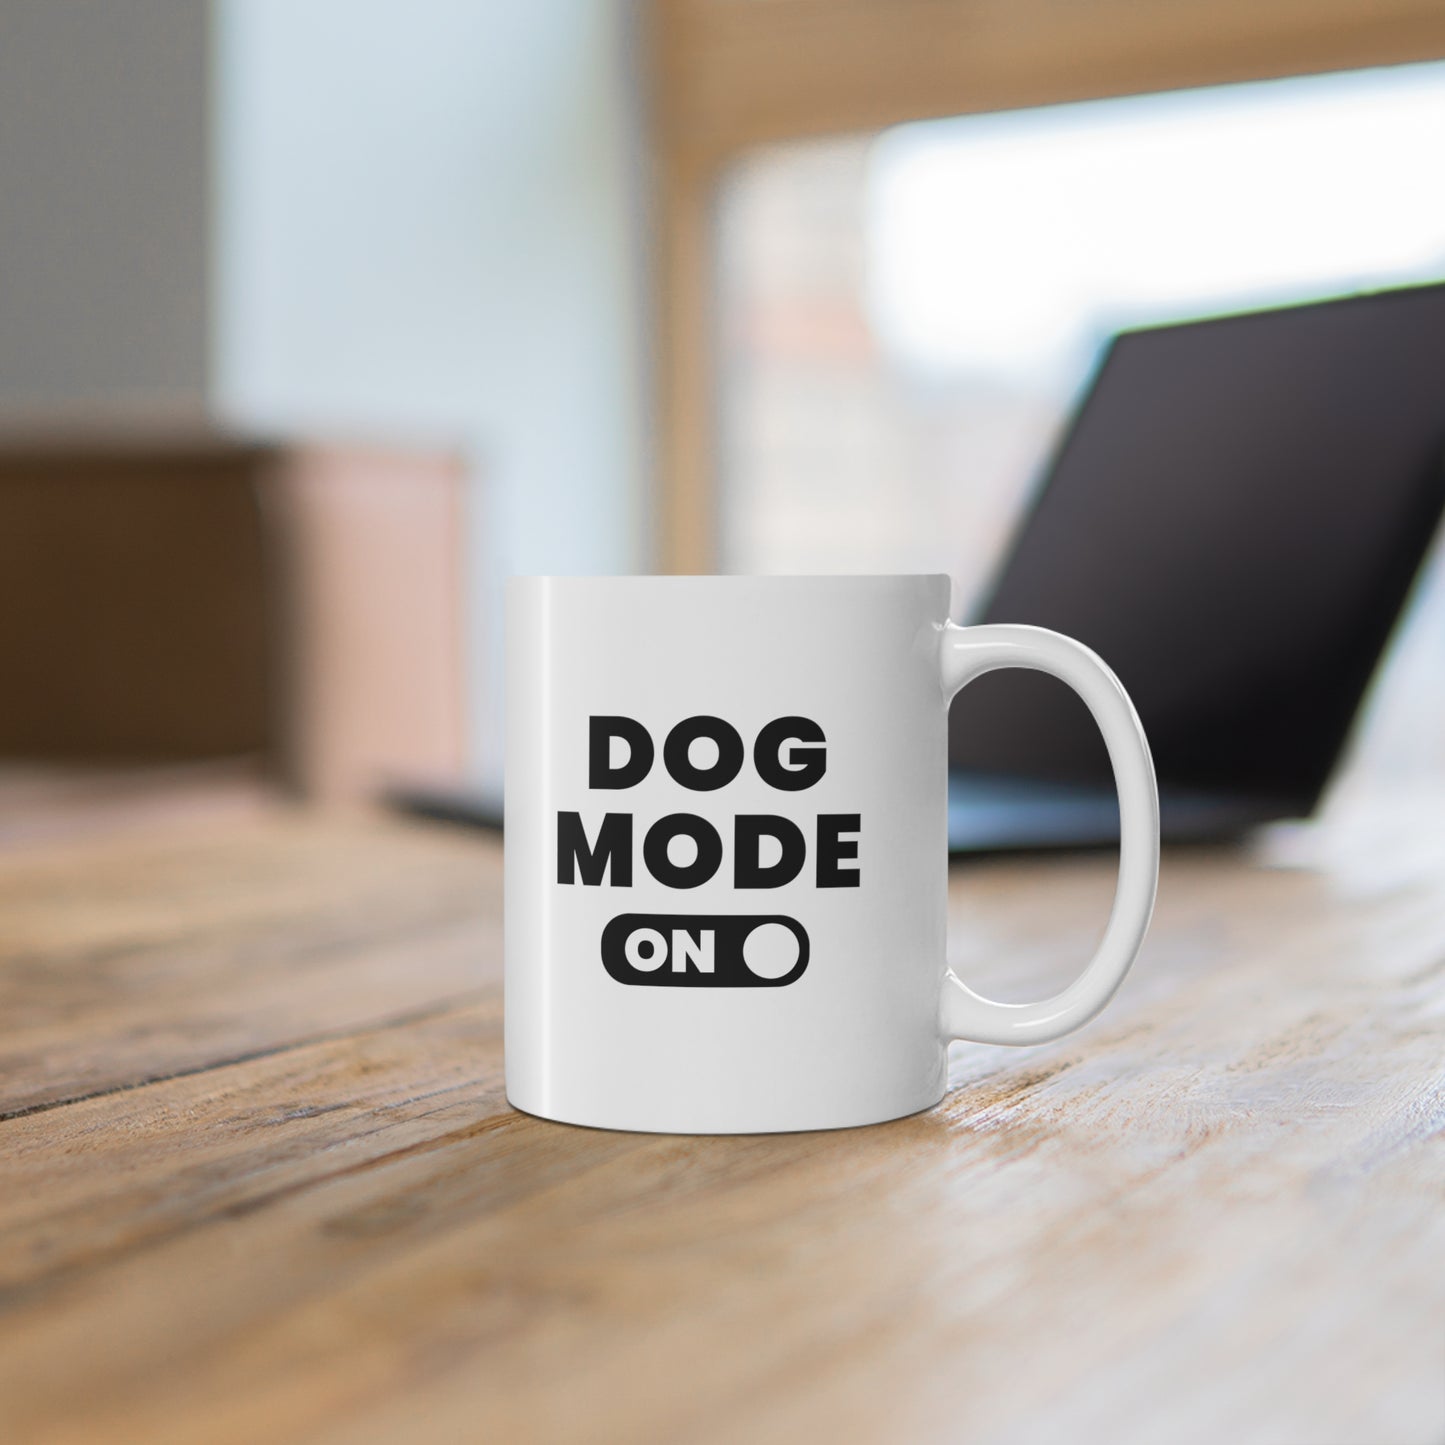 Dog Mode On Coffee Mug 11oz